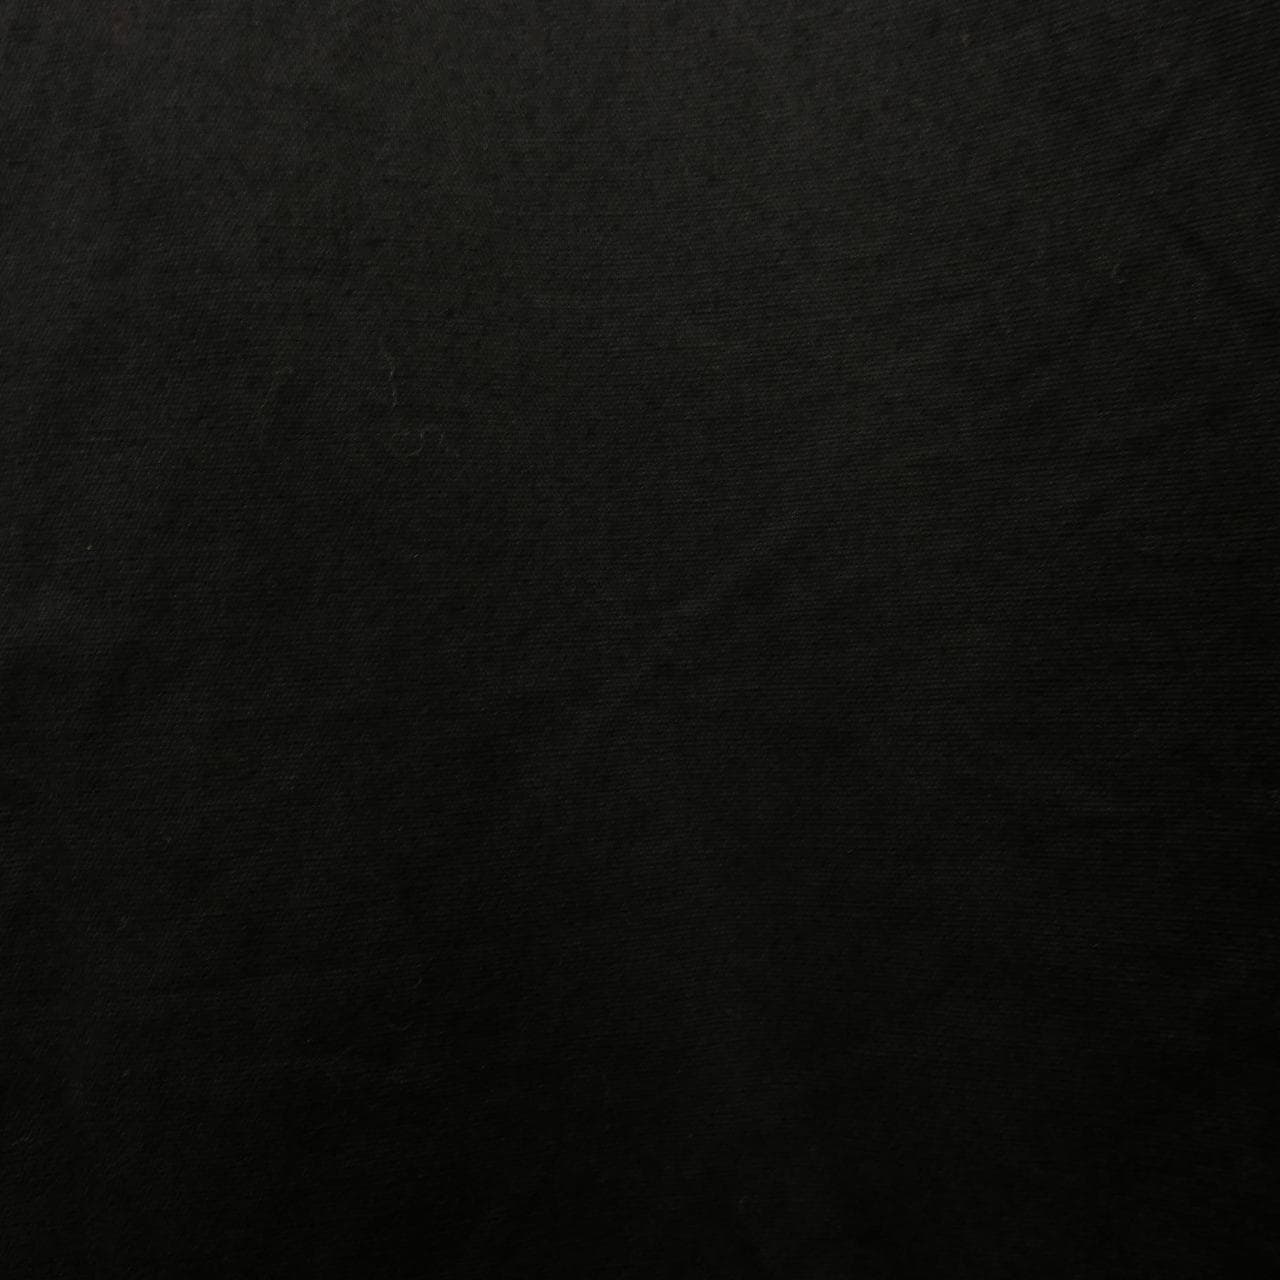 ブラックコムデギャルソン BLACK GARCONS シャツ